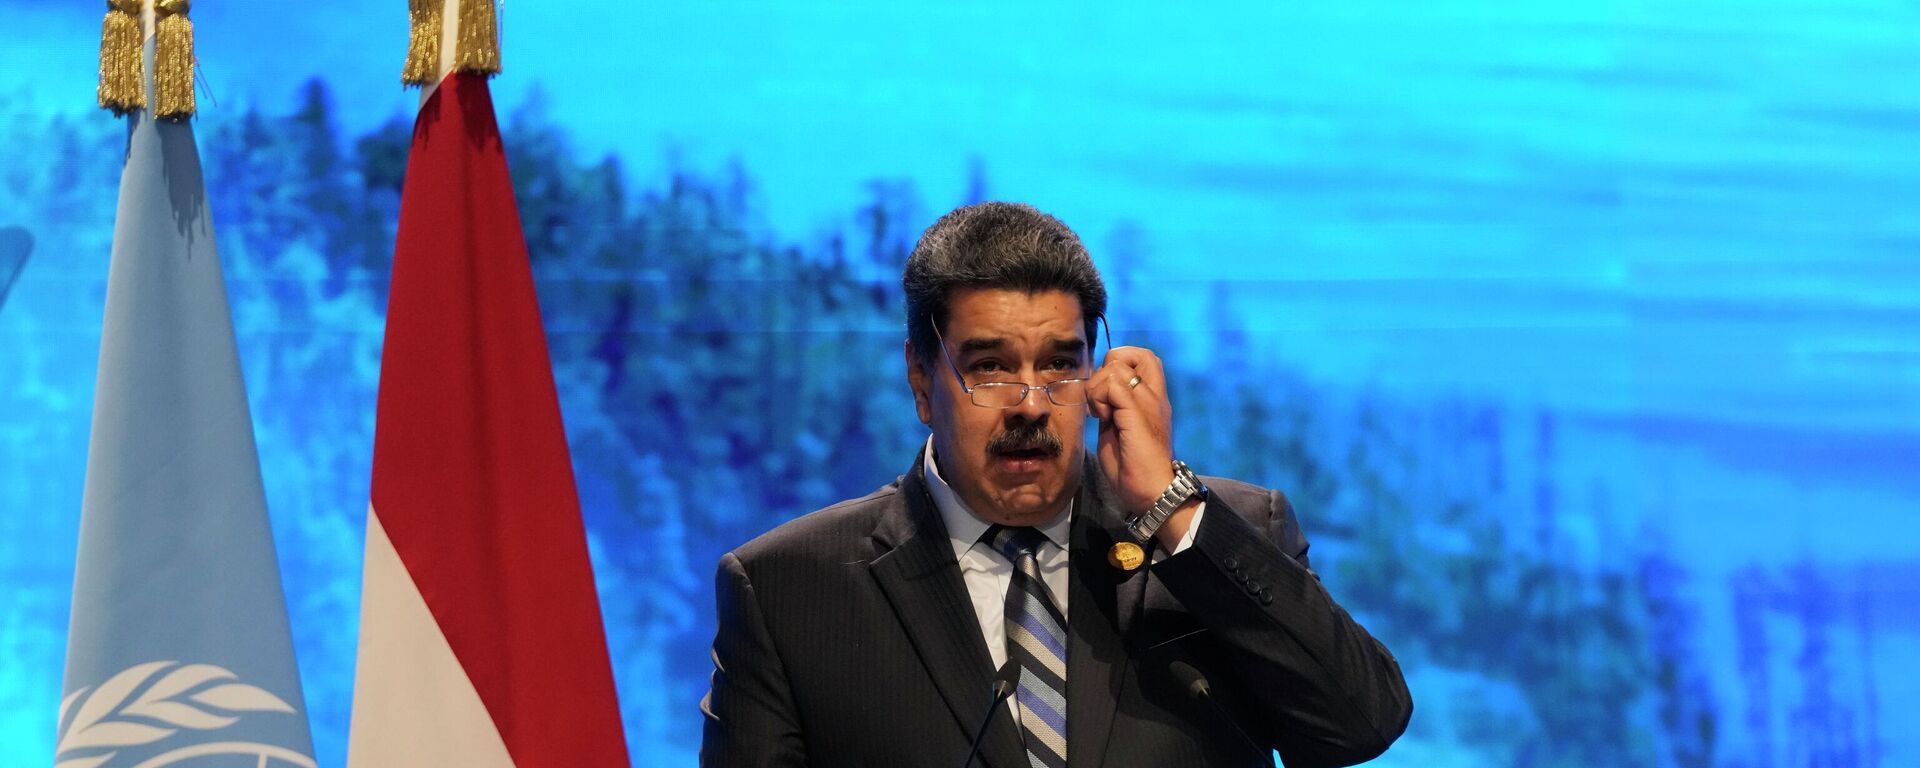 Nicolás Maduro, el presidente de Venezuela en la 27 Conferencia de las Partes (COP27) de la Convención Marco de las Naciones Unidas sobre el Cambio Climático - Sputnik Mundo, 1920, 08.11.2022